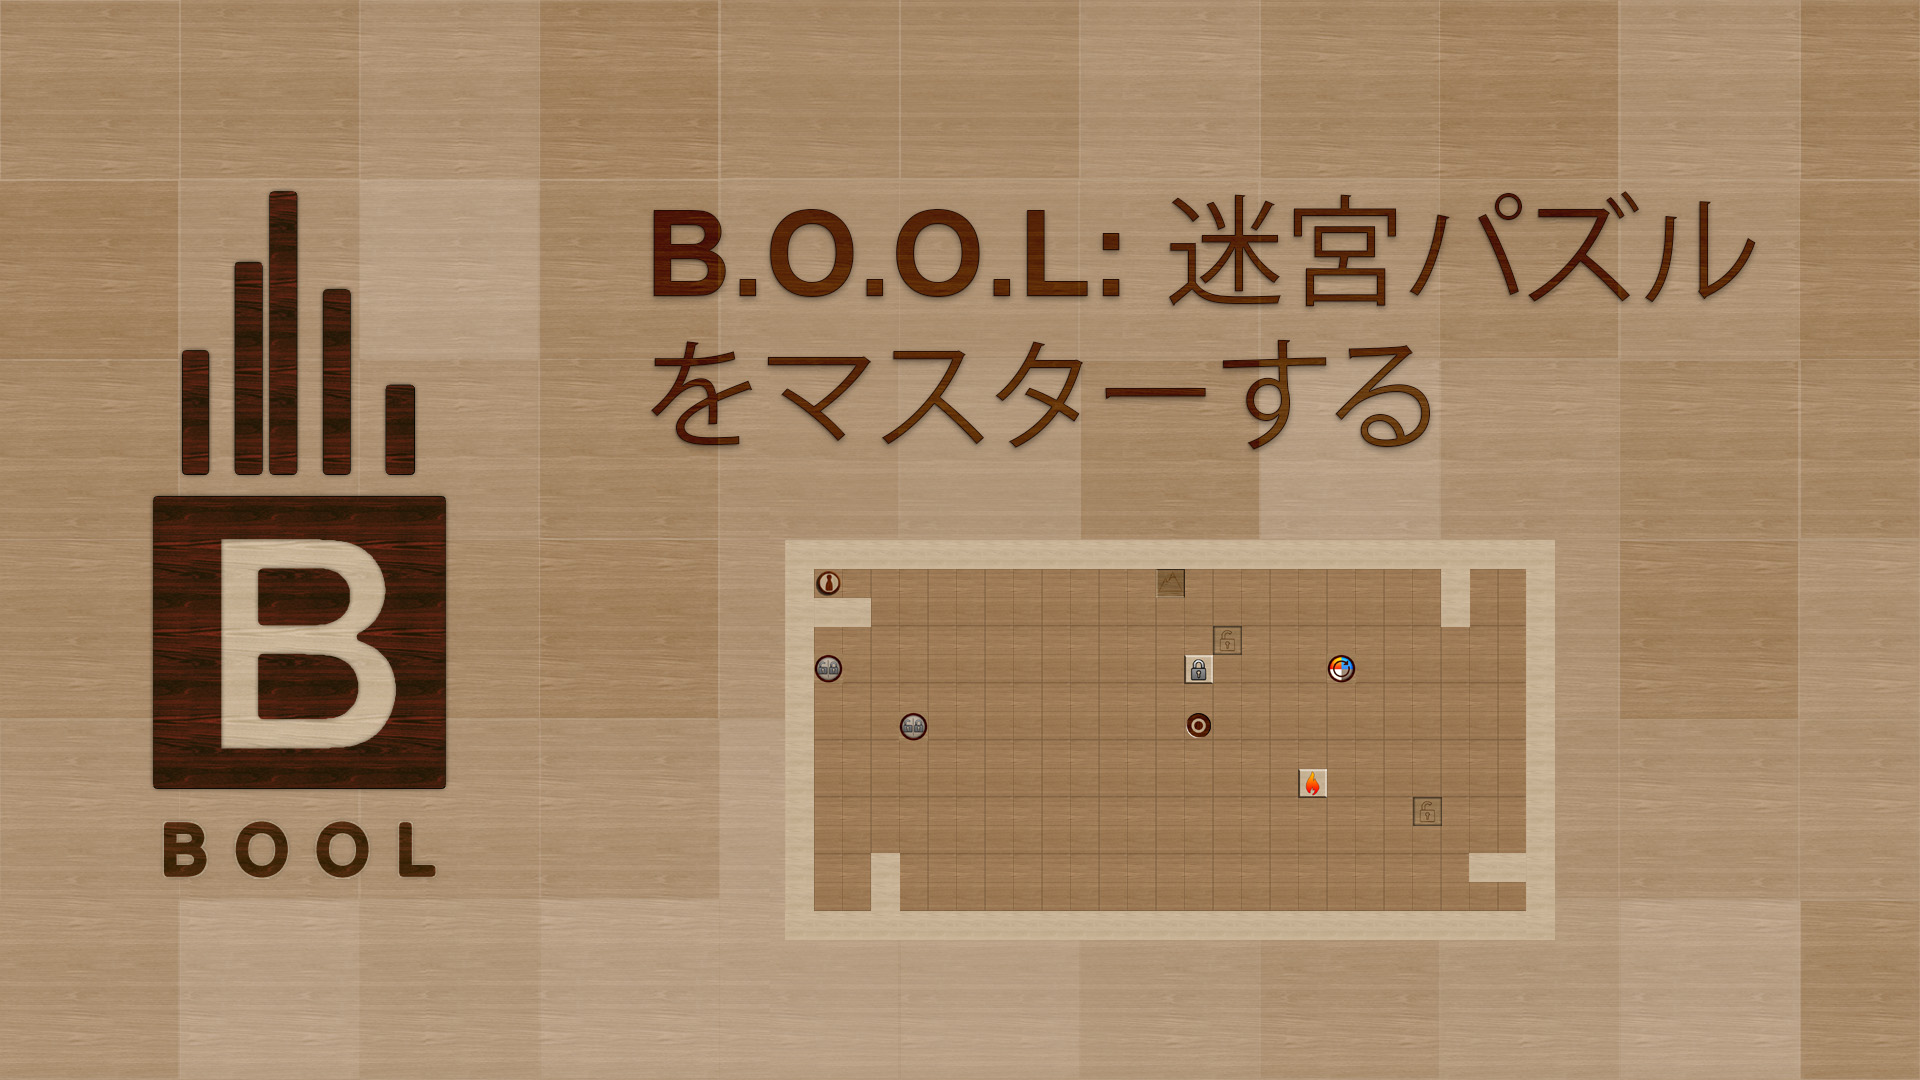 B.O.O.L: 迷宮パズルをマスターする